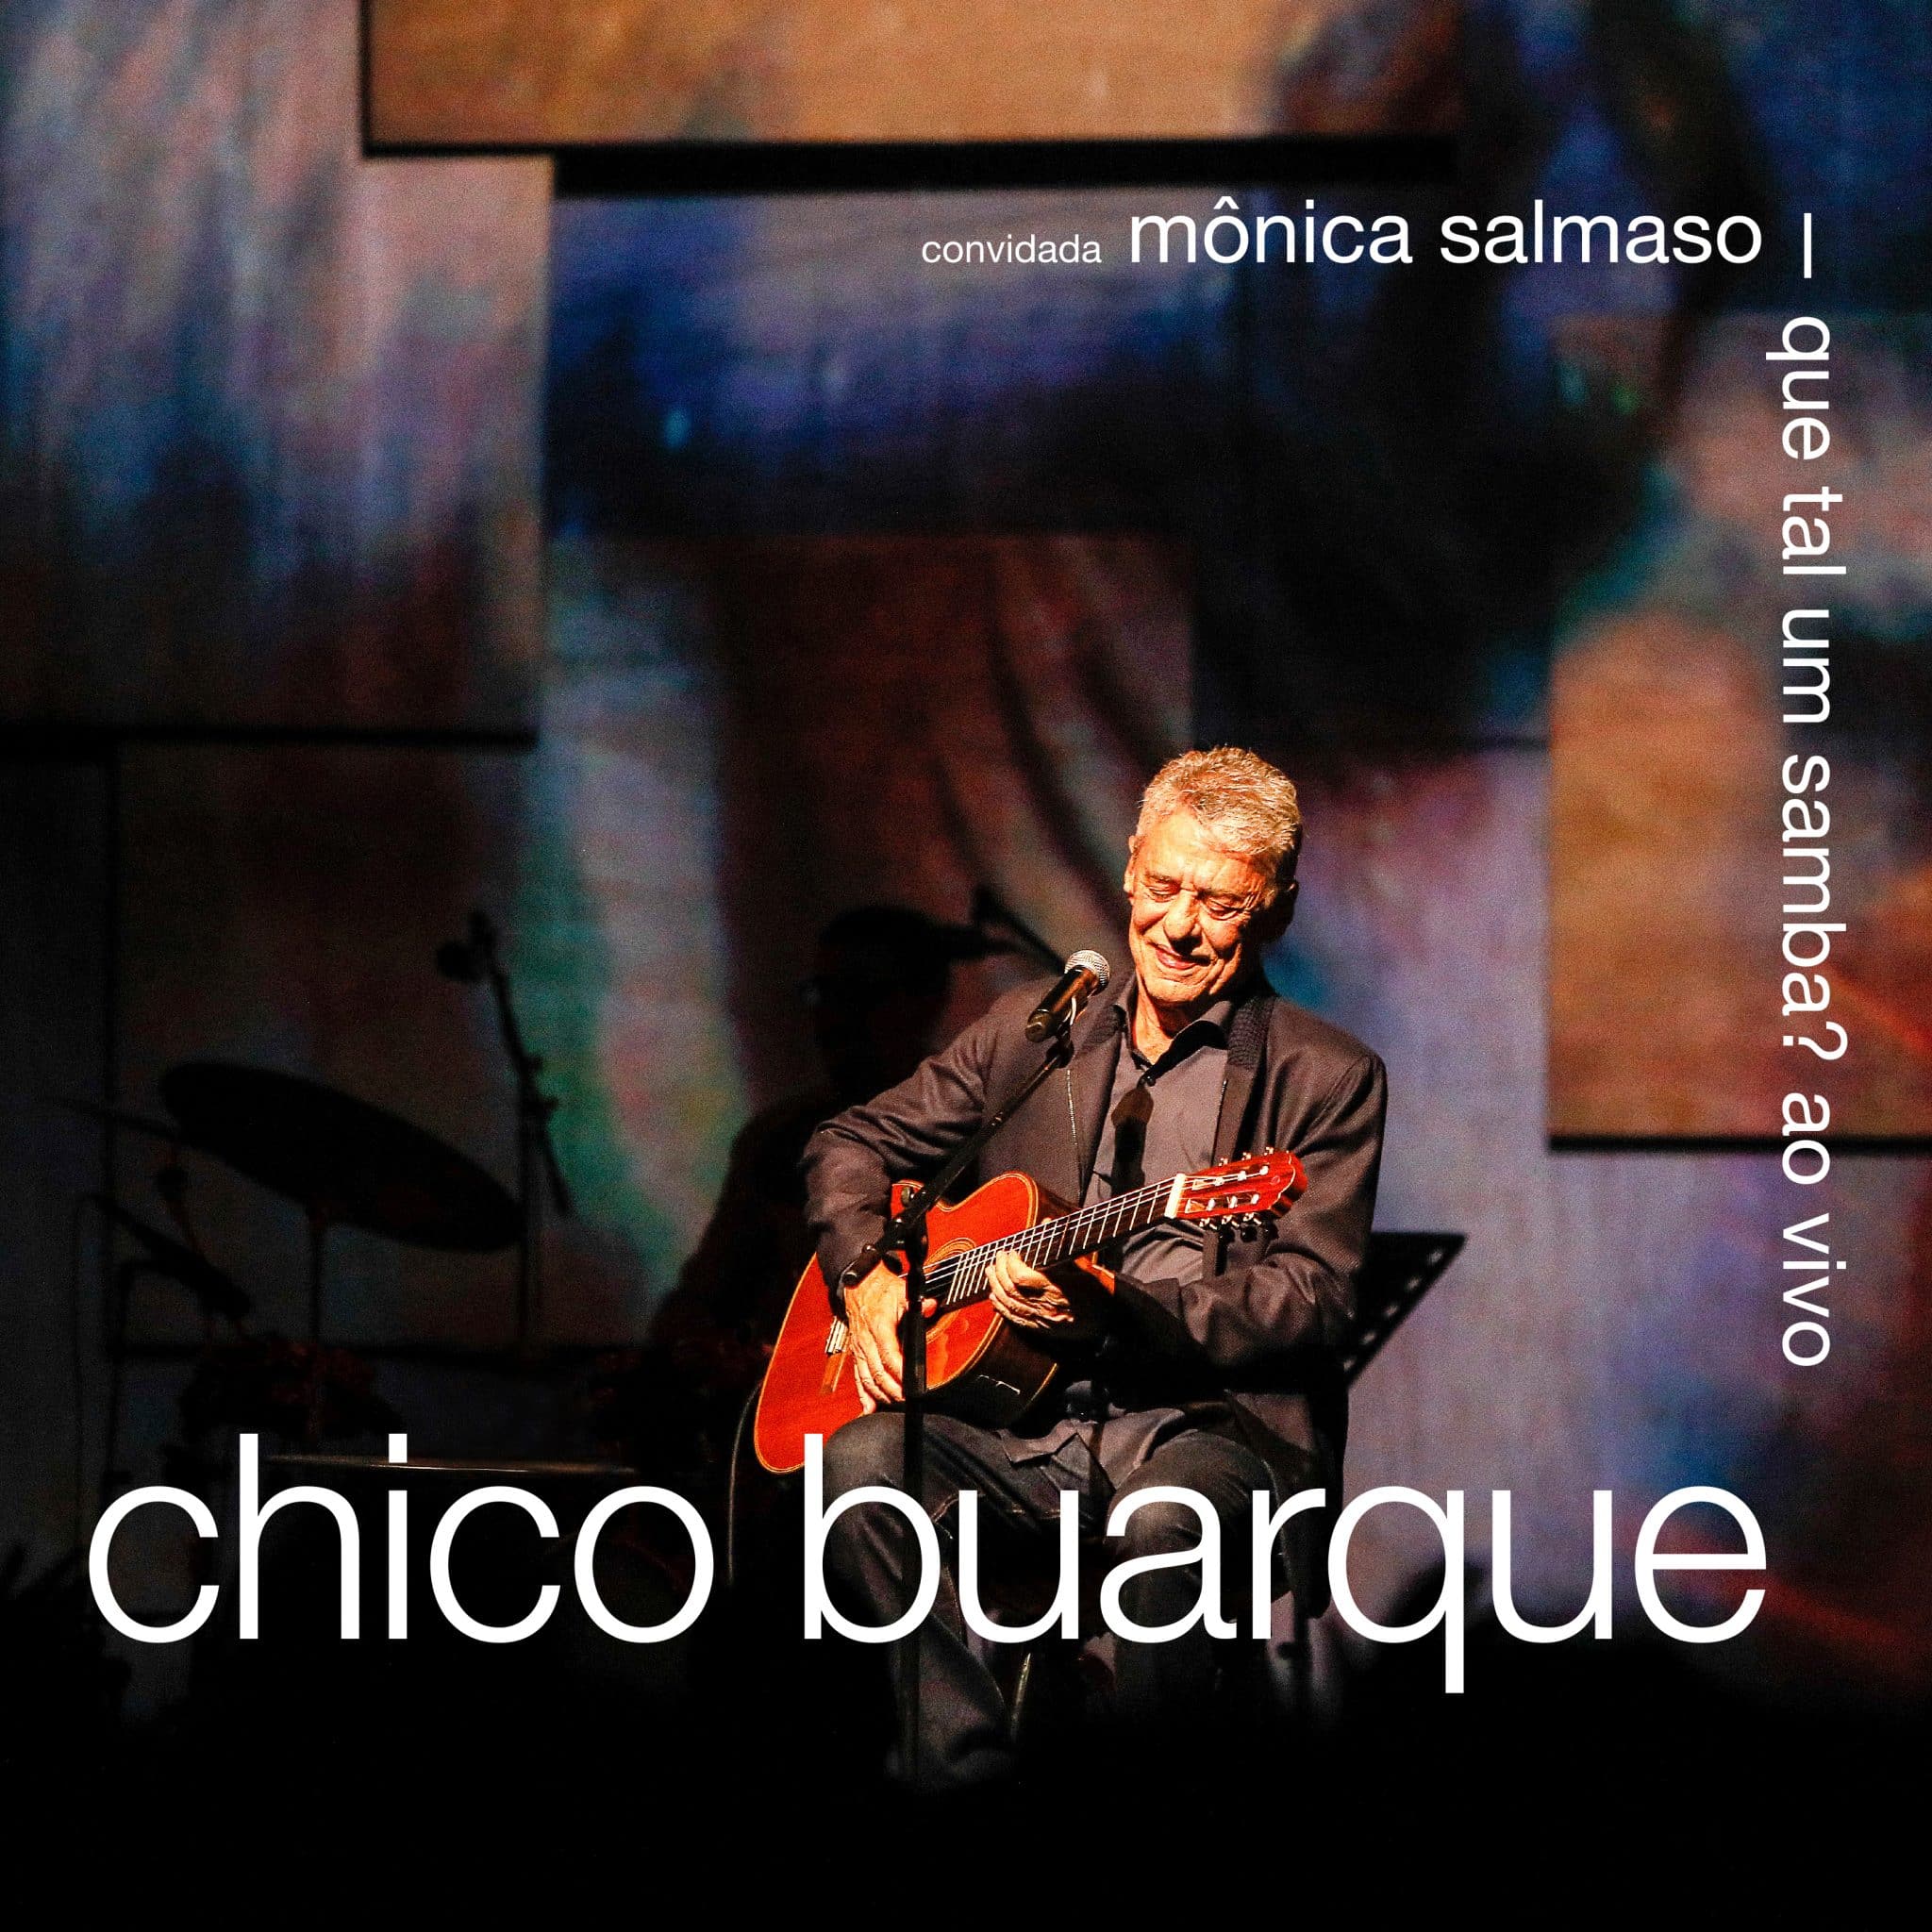 revistaprosaversoearte.com - 'Que tal um samba? - (Ao Vivo)', álbum duplo de Chico Buarque